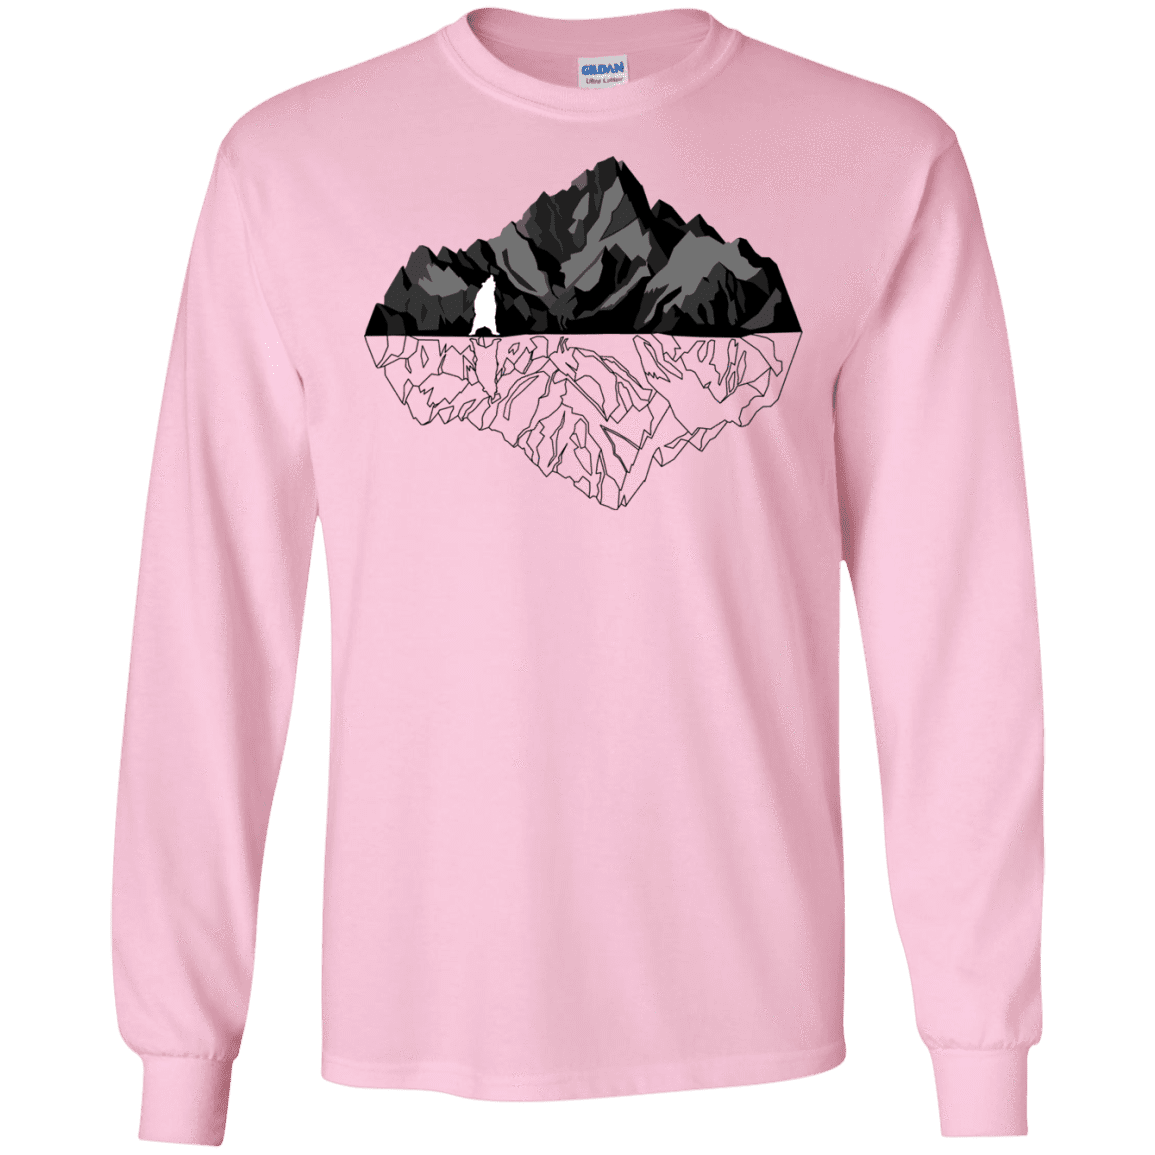 T-Shirts Light Pink / S Bear Reflection Men's Long Sleeve T-Shirt